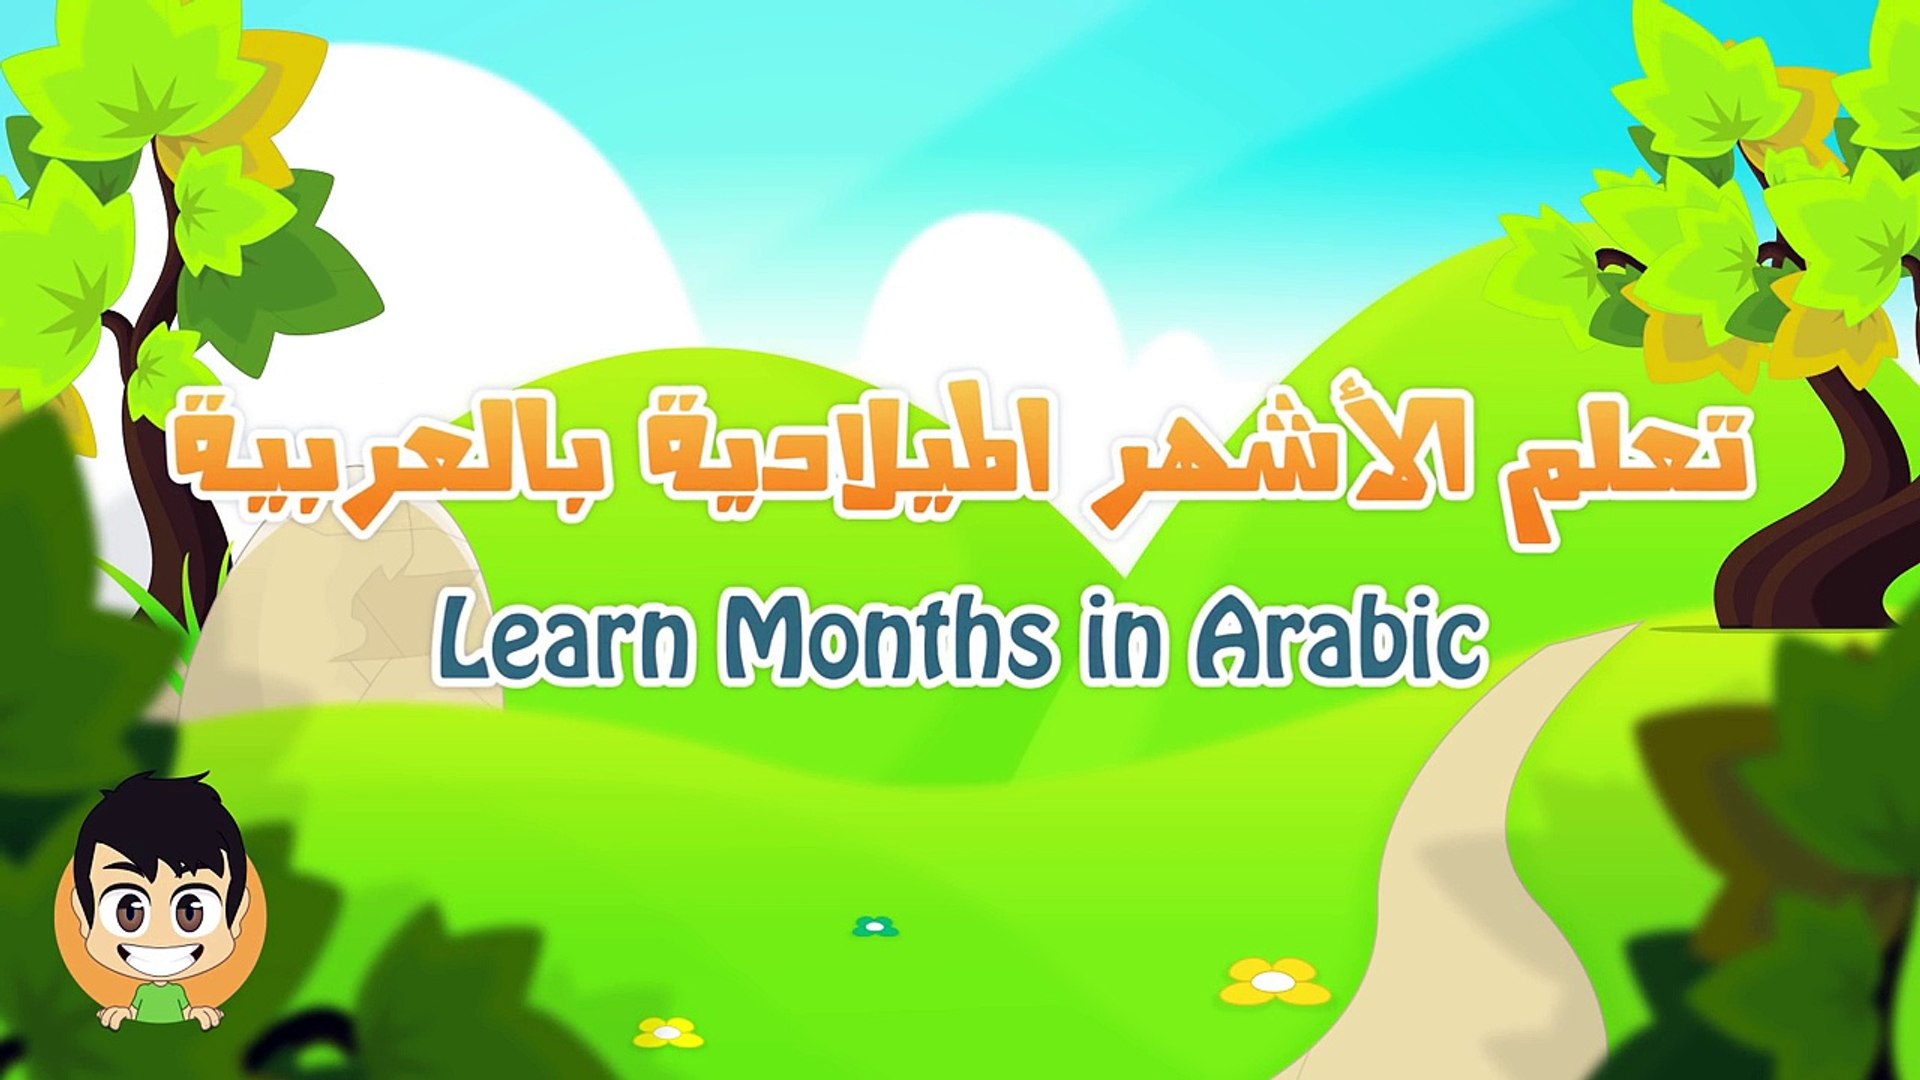 الشهور الميلادية بالعربية